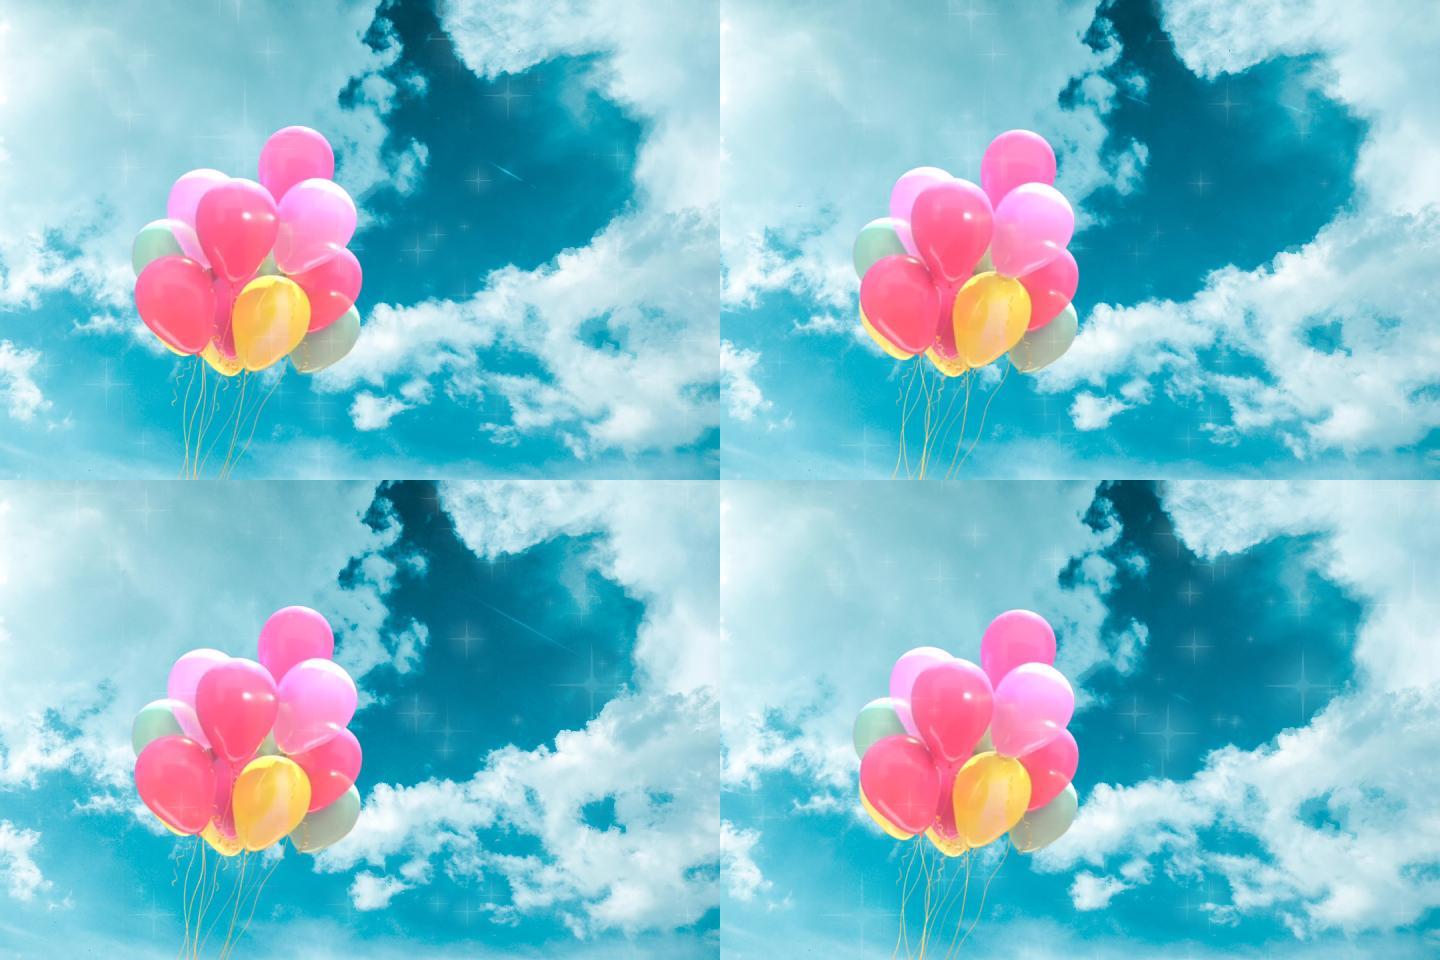 蓝天白云下可爱颜色丰富气球循环素材